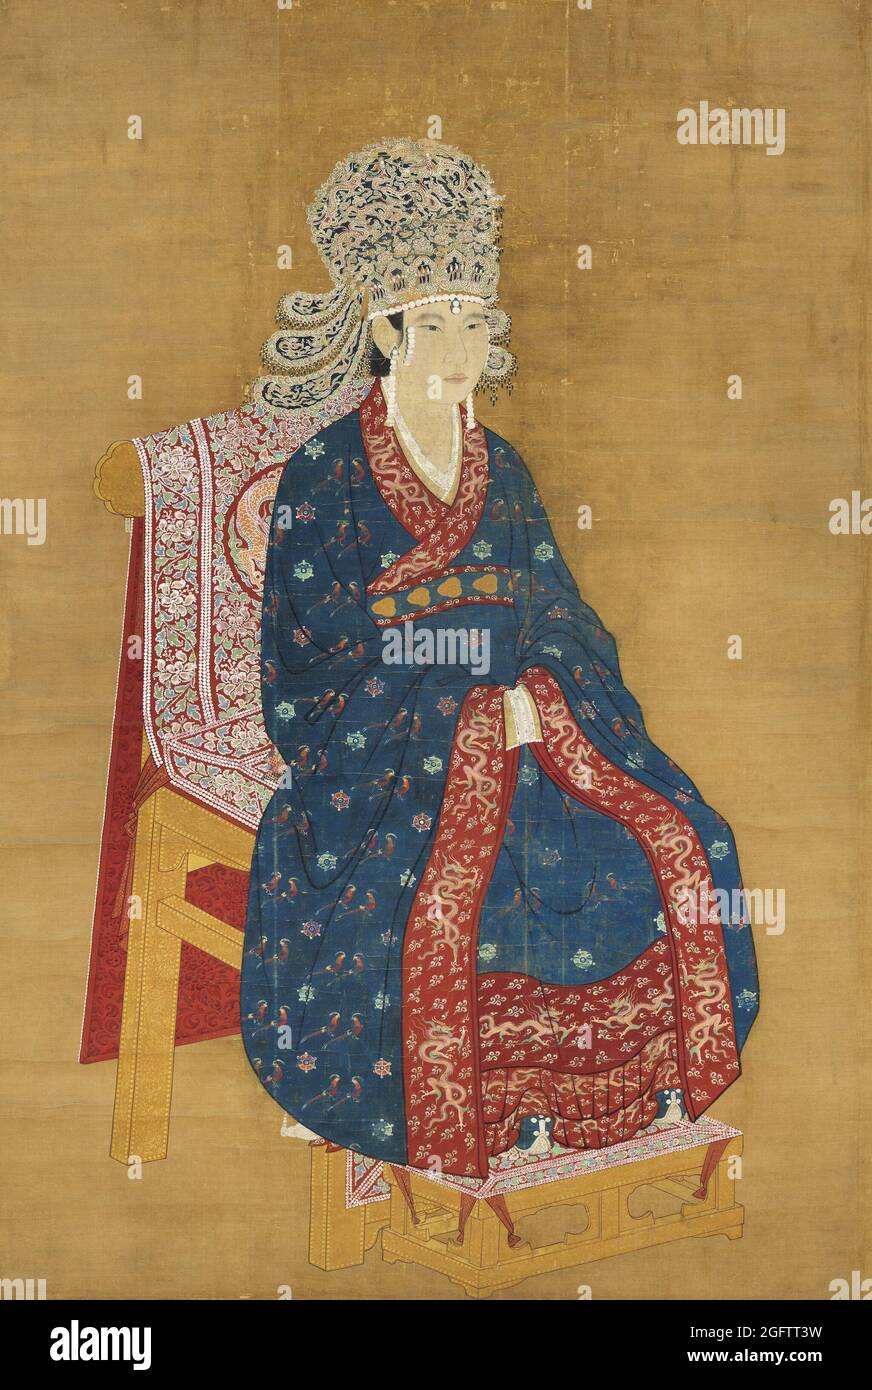 China: Kaiserin Xiang (1047-1102), Gemahlin von Kaiser Shenzong, 6. Herrscherin der Song Dynastie (reg.1067-1085). Hängende Schriftrolle Malerei, c. 1067-1102. Die Kaiserin Xiang, auch bekannt als Qisheng, war Gemahlin der Kaiserin Shenzong. Sie hatte nur ein Kind, eine Tochter, war aber die legale Mutter der zukünftigen Kaiser Zhezong und Huizong. Sie wurde Kaiserin Dowager, als Kaiser Zhezong auf den Thron stieg. Sie agierte eine Zeit lang als Regentin und Co-Herrscherin von Kaiser Huizong und war in Palastangelegenheiten aktiv. Stockfoto